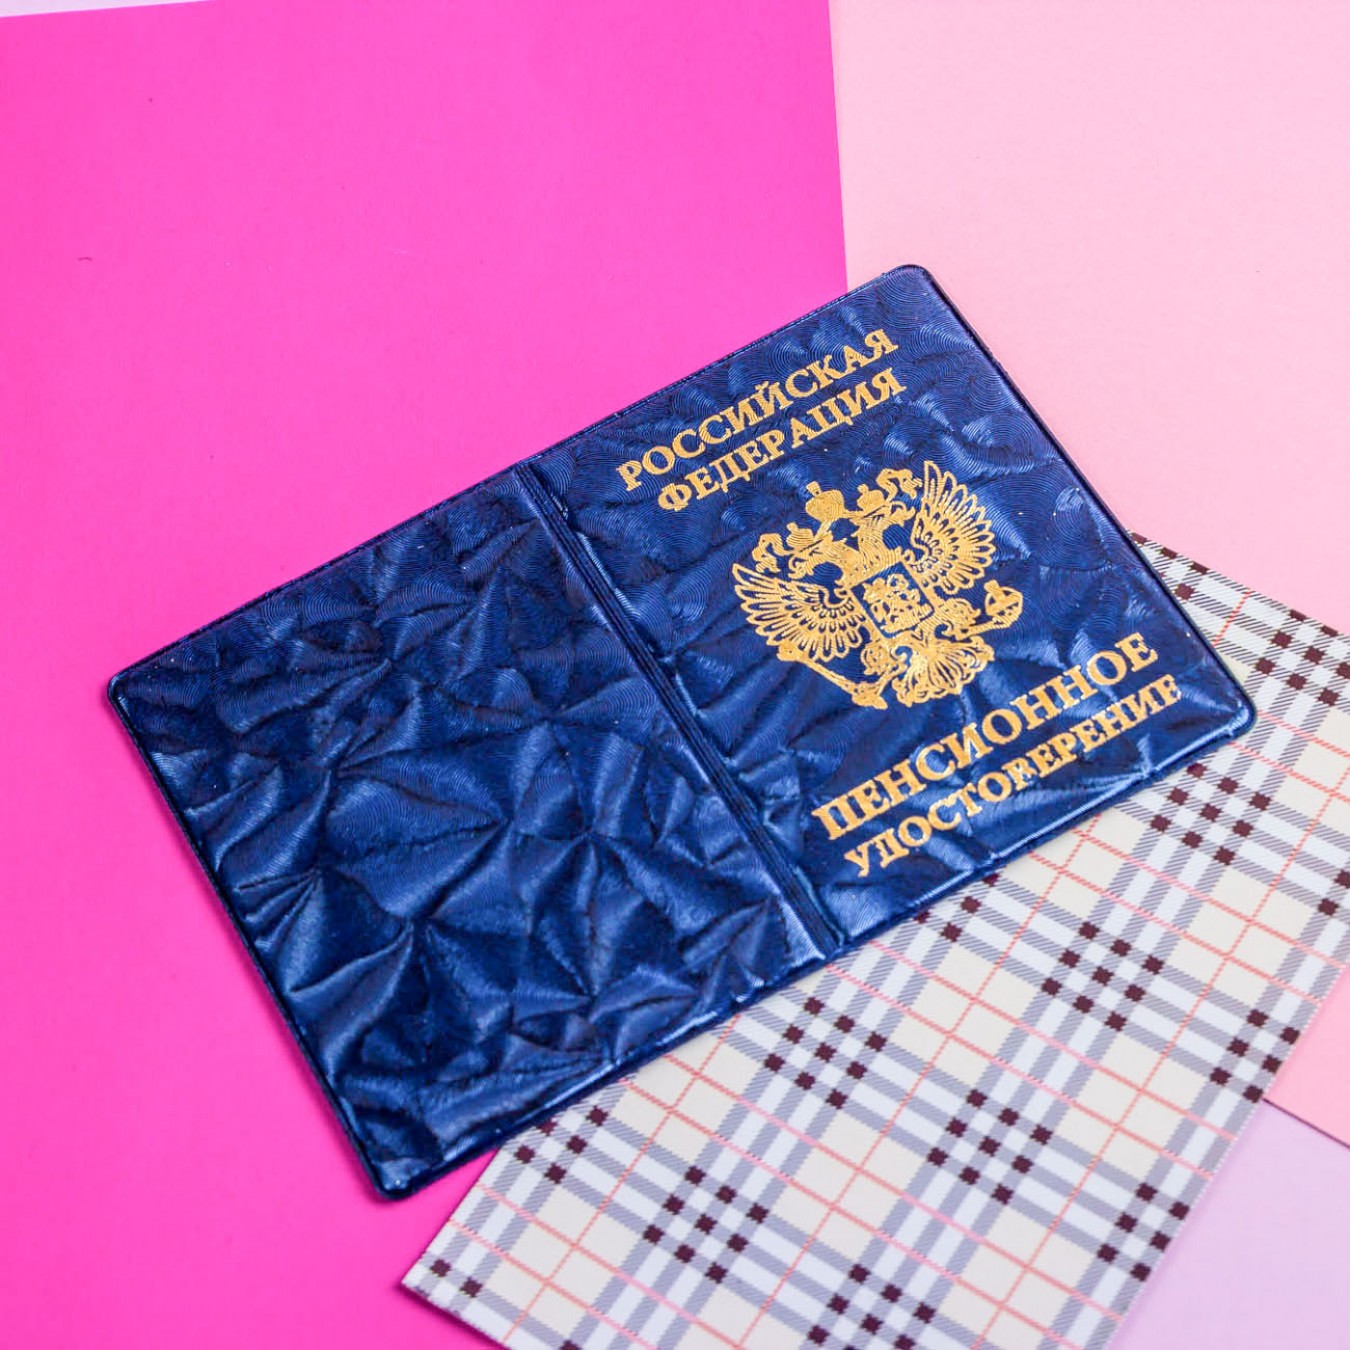 Обложка для пенсионного удостоверения "ГОЛЛАНДИЯ" 0505-2 Blue